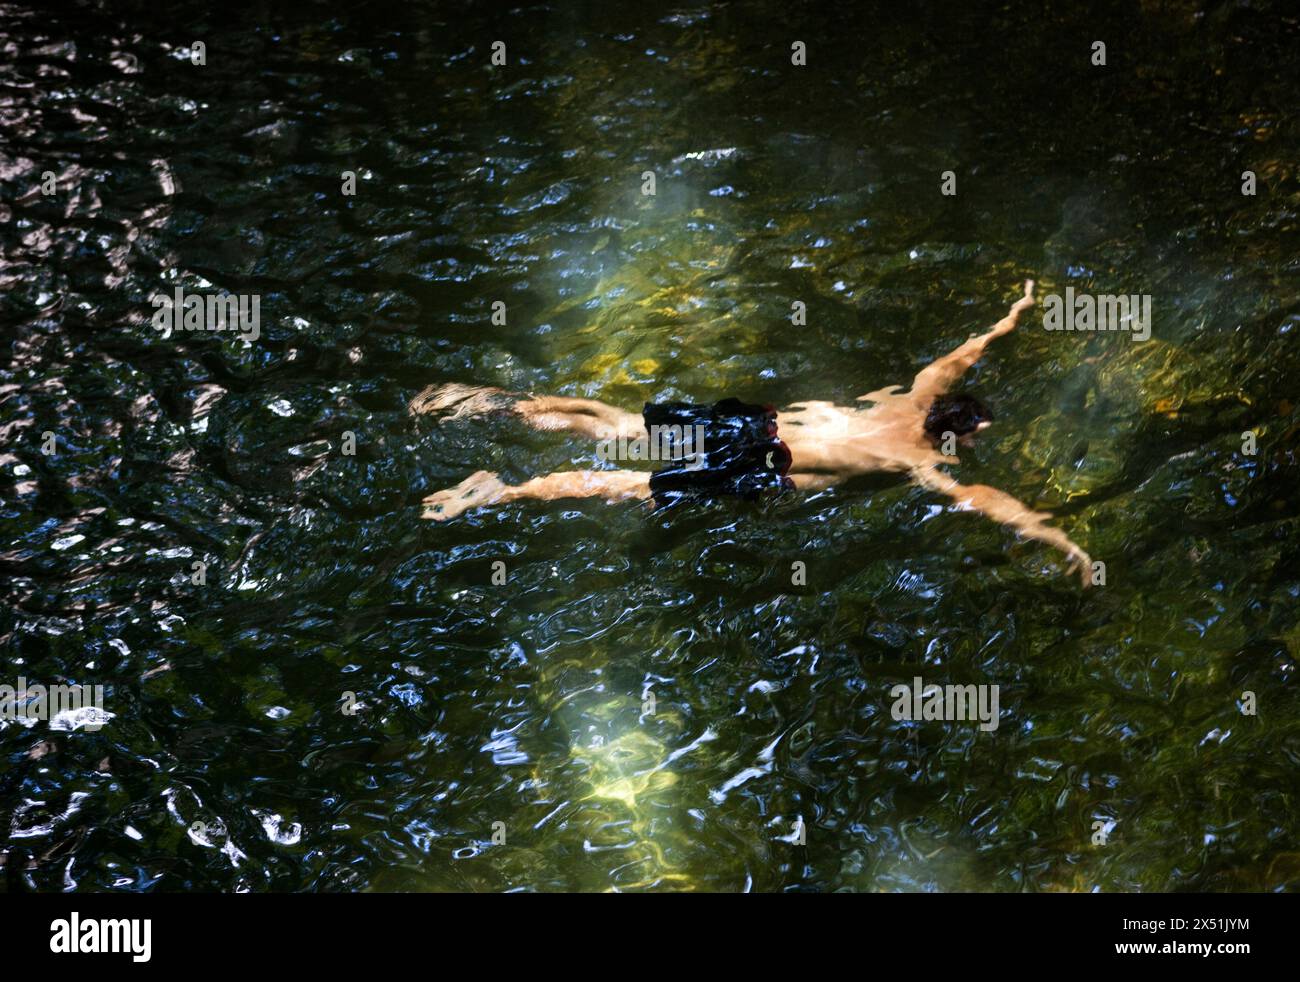 Zusammenfassung eines schwimmenden Mannes Stockfoto